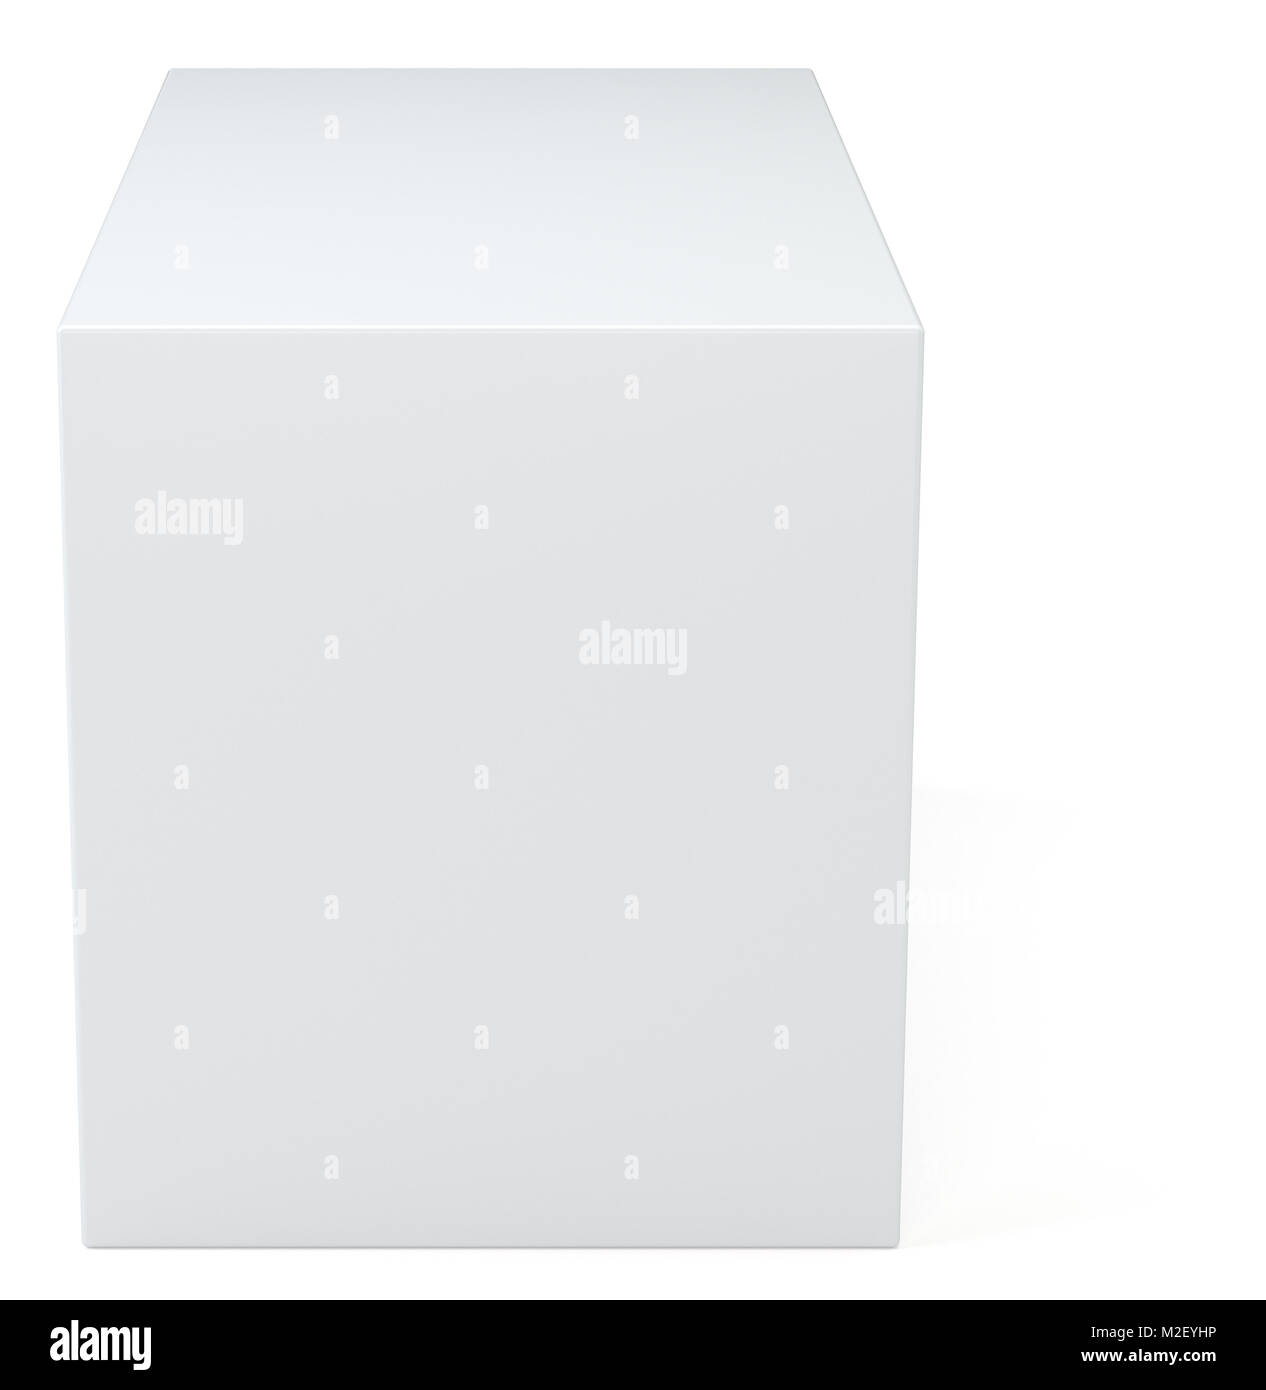 White Box cube im Studio Hintergrund. Leer, leeres Paket 3d-Abbildung. Graue Schatten. Cube oder Square product design Objekt. Stockfoto